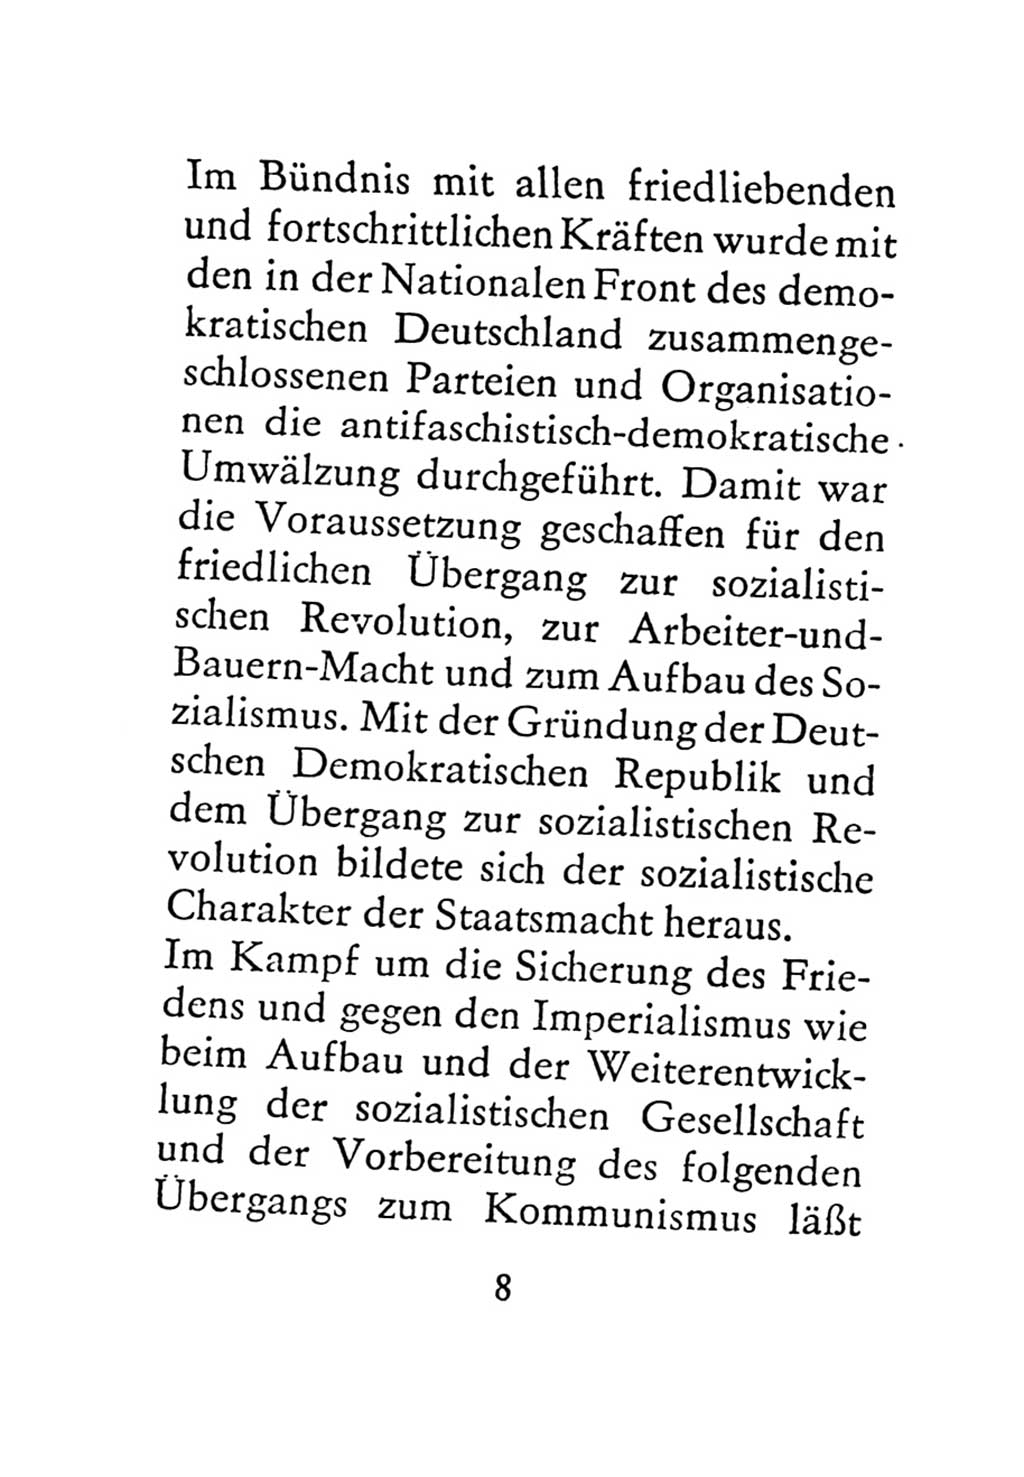 Statut der Sozialistischen Einheitspartei Deutschlands (SED) 1971, Seite 8 (St. SED DDR 1971, S. 8)